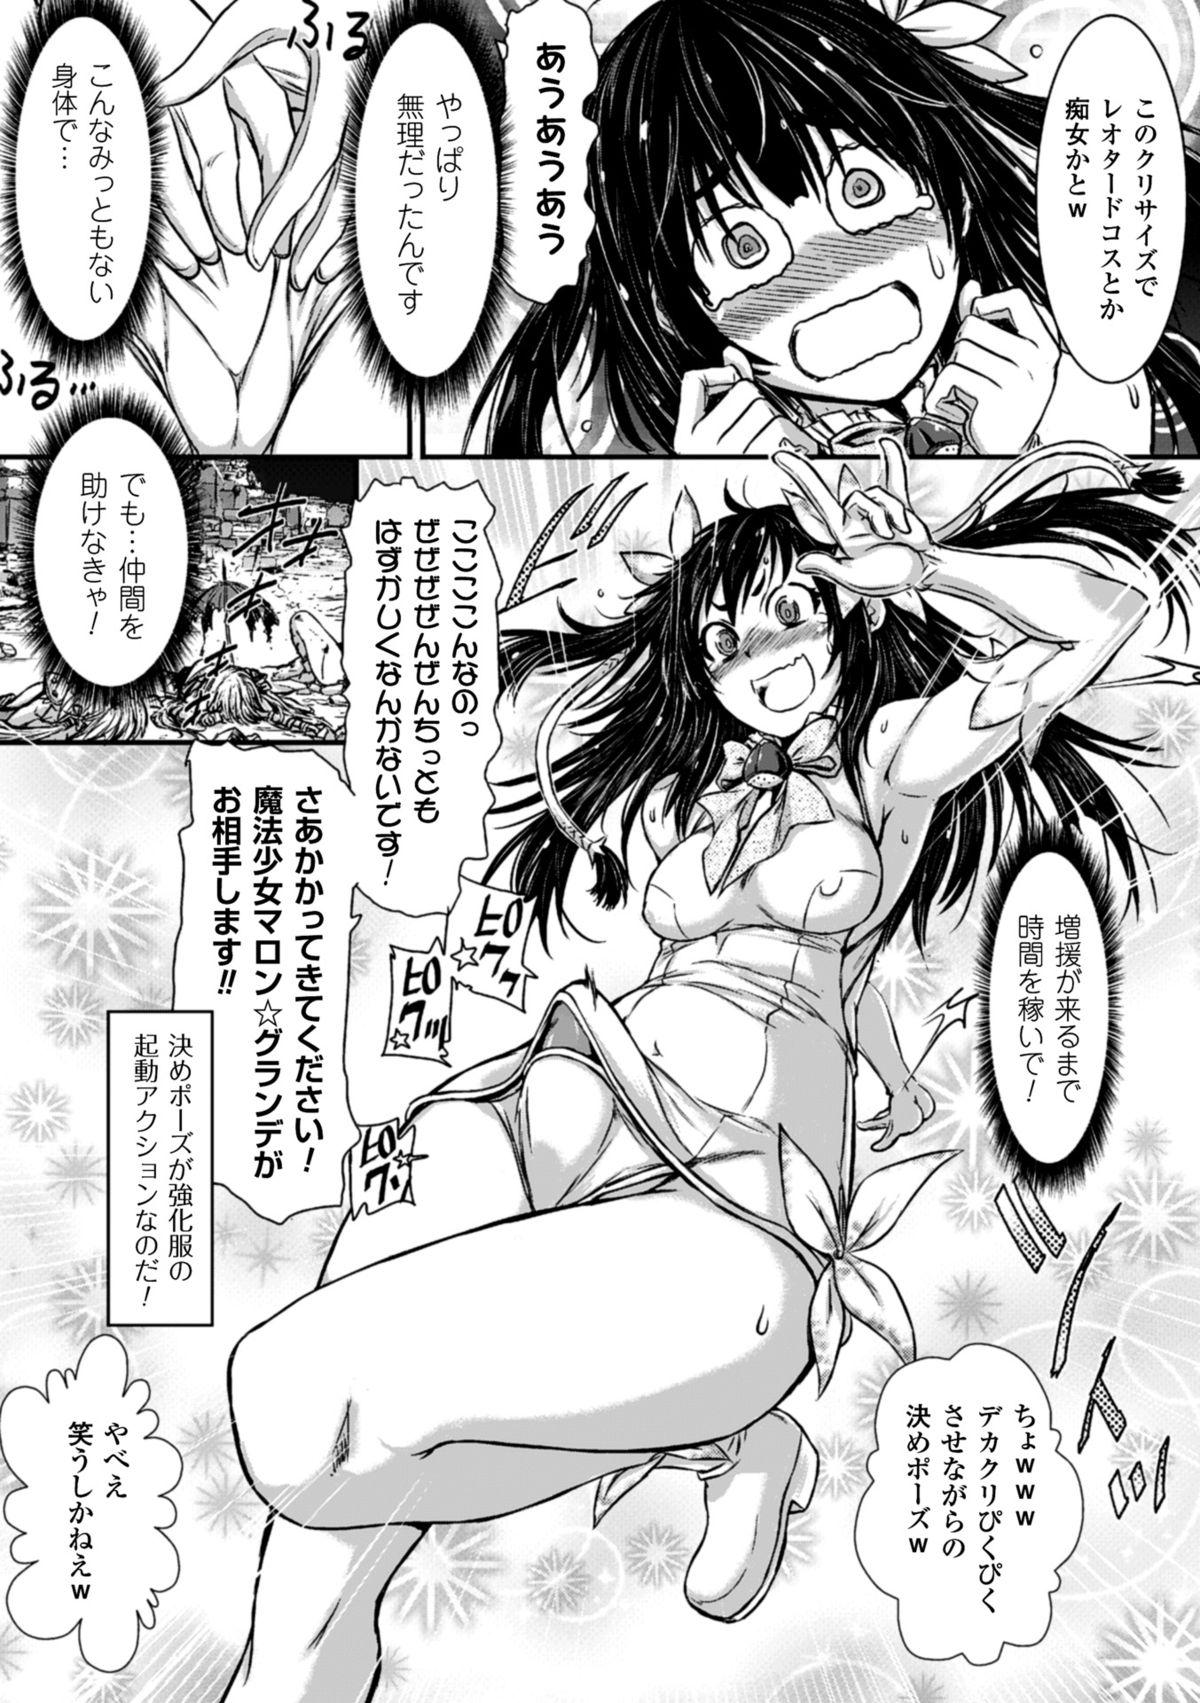 2D Comic Magazine Dekakuri Bishoujo Kuriiki Jigoku Vol.1 52